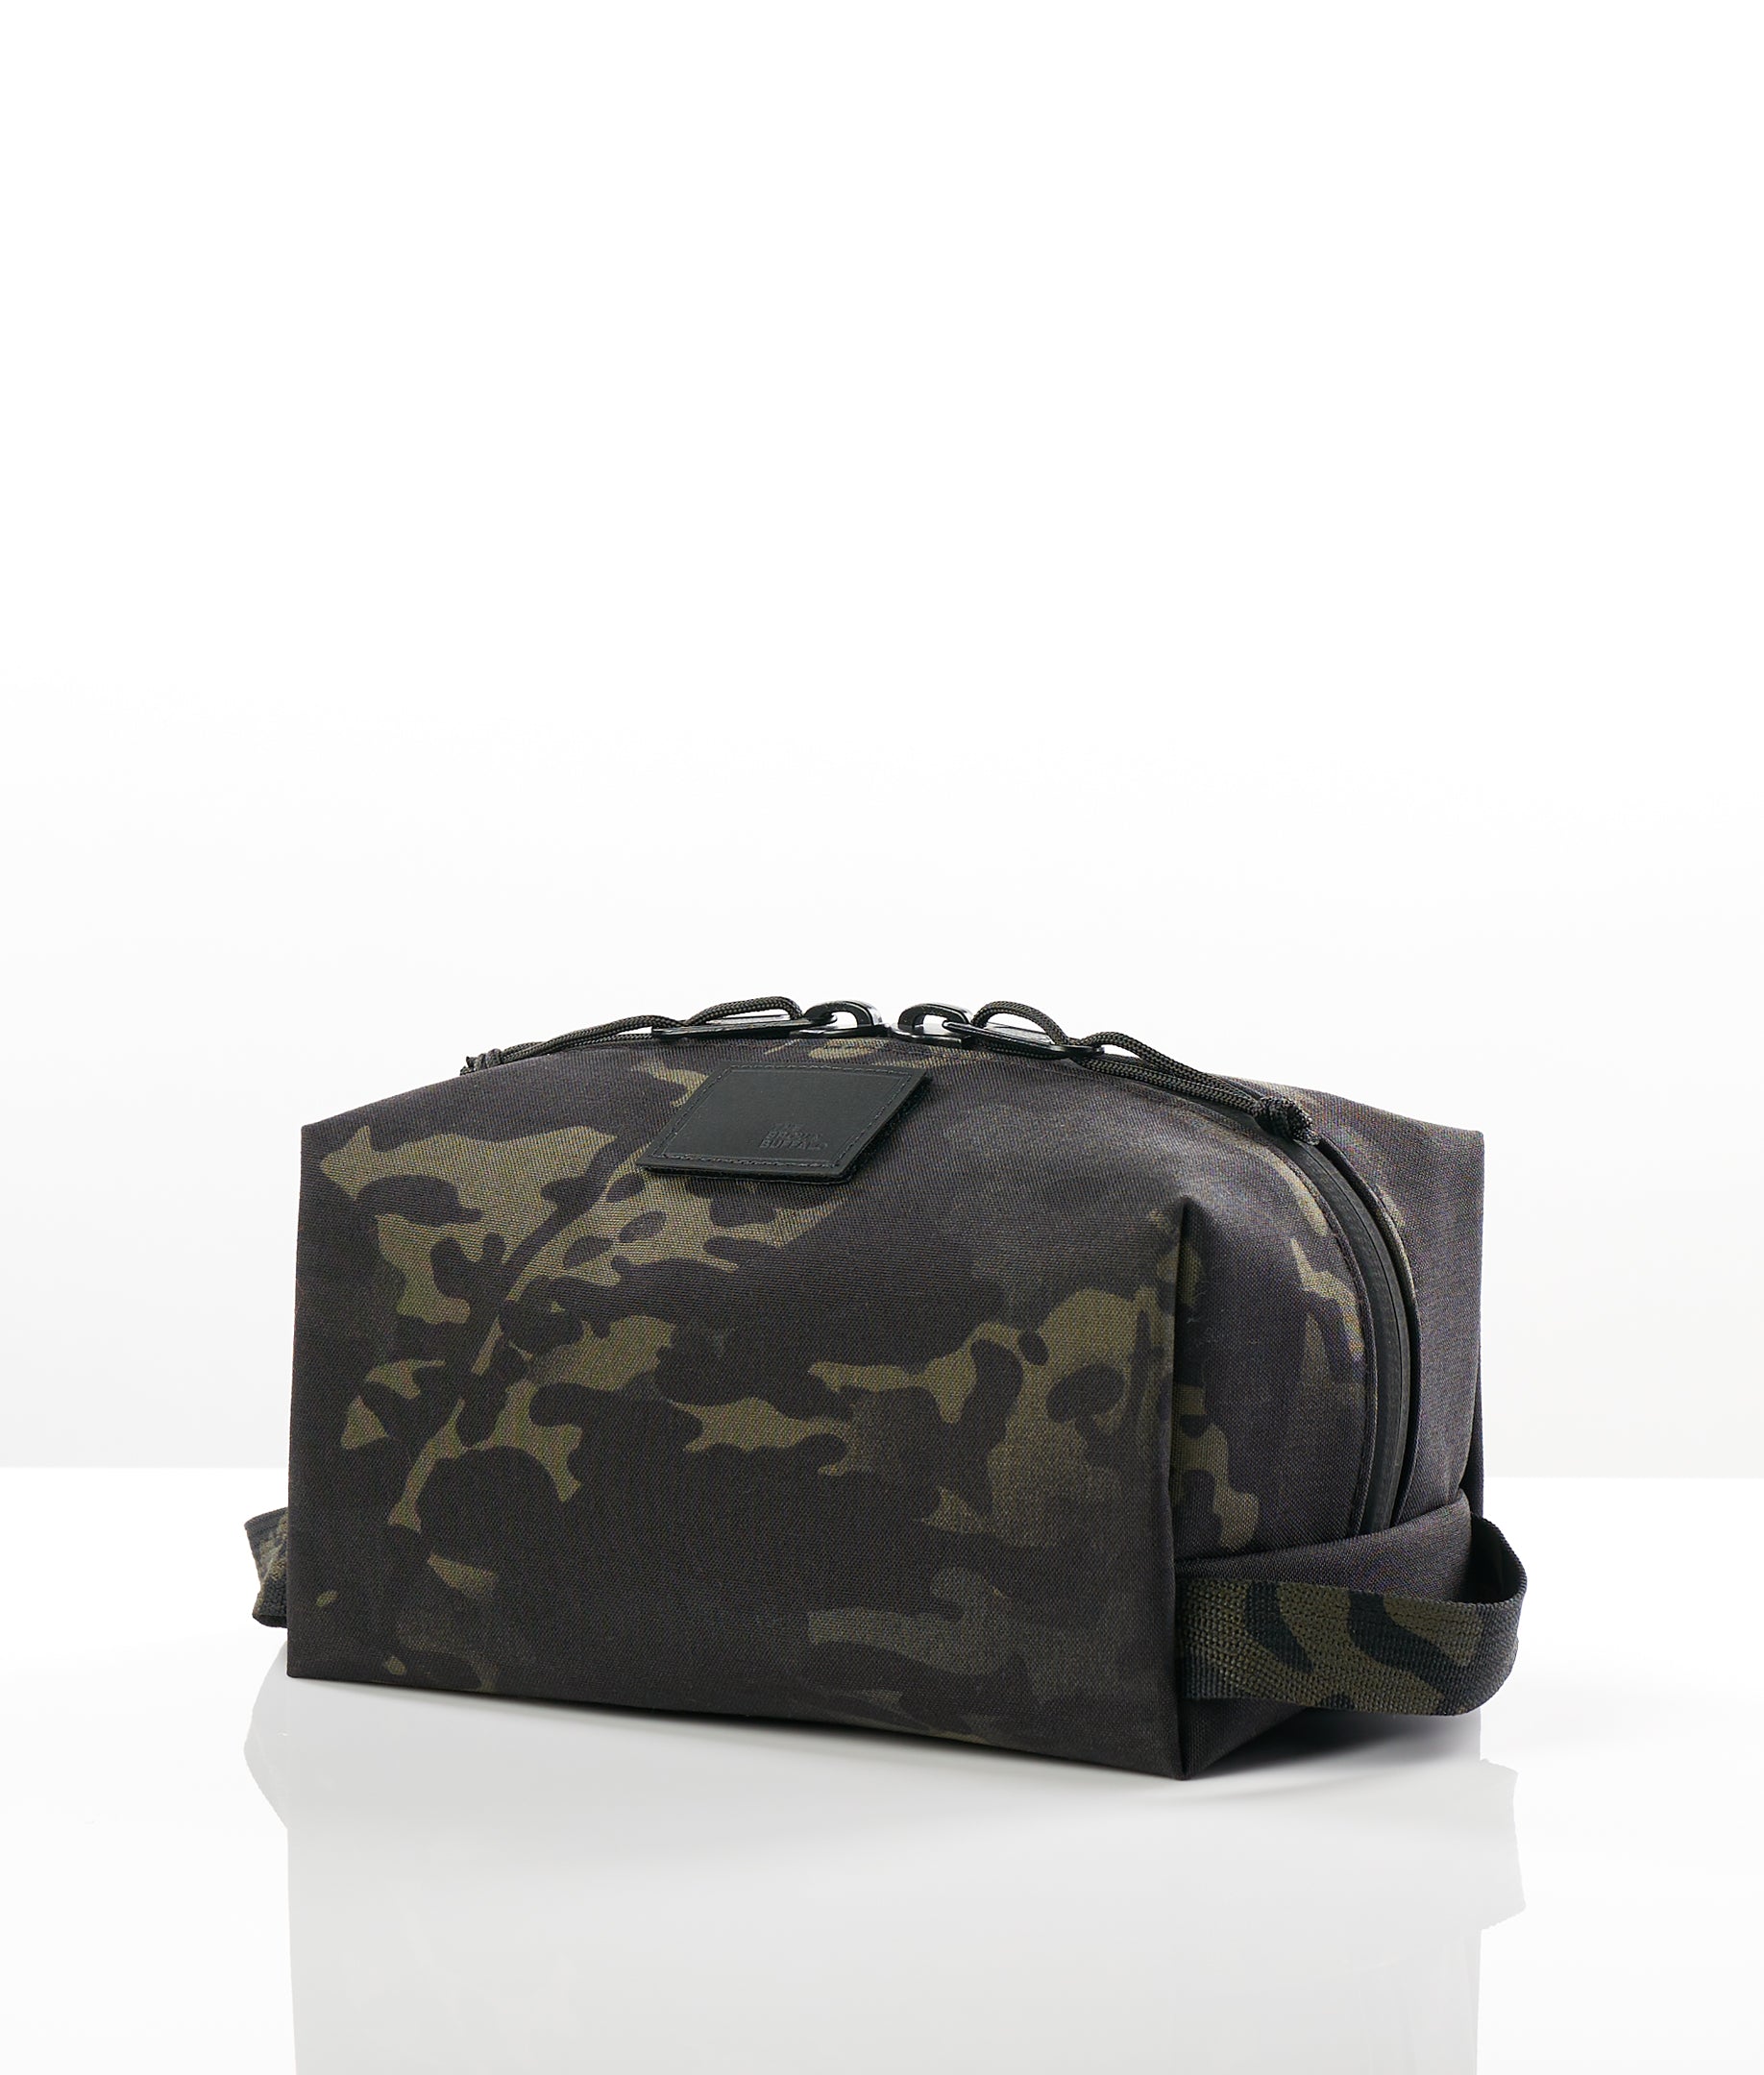 Clip Bag - CORDURA® Black 500D Multicam®